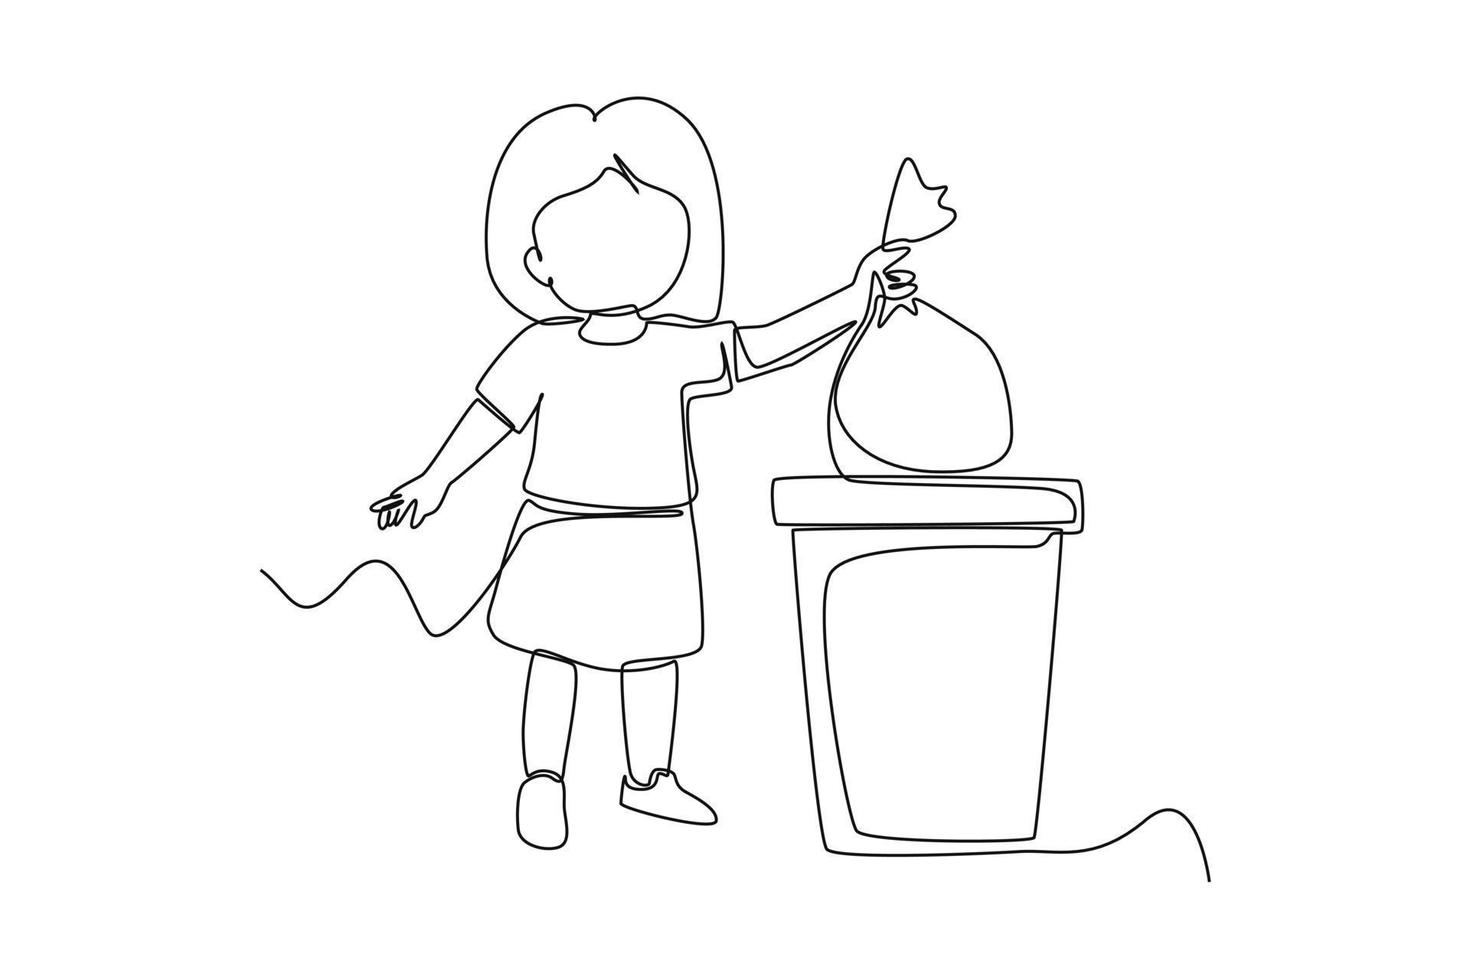 soltero uno línea dibujo pequeño niño lanzar basura a basura compartimiento. cuidado de la salud a colegio concepto. continuo línea dibujar diseño gráfico vector ilustración.